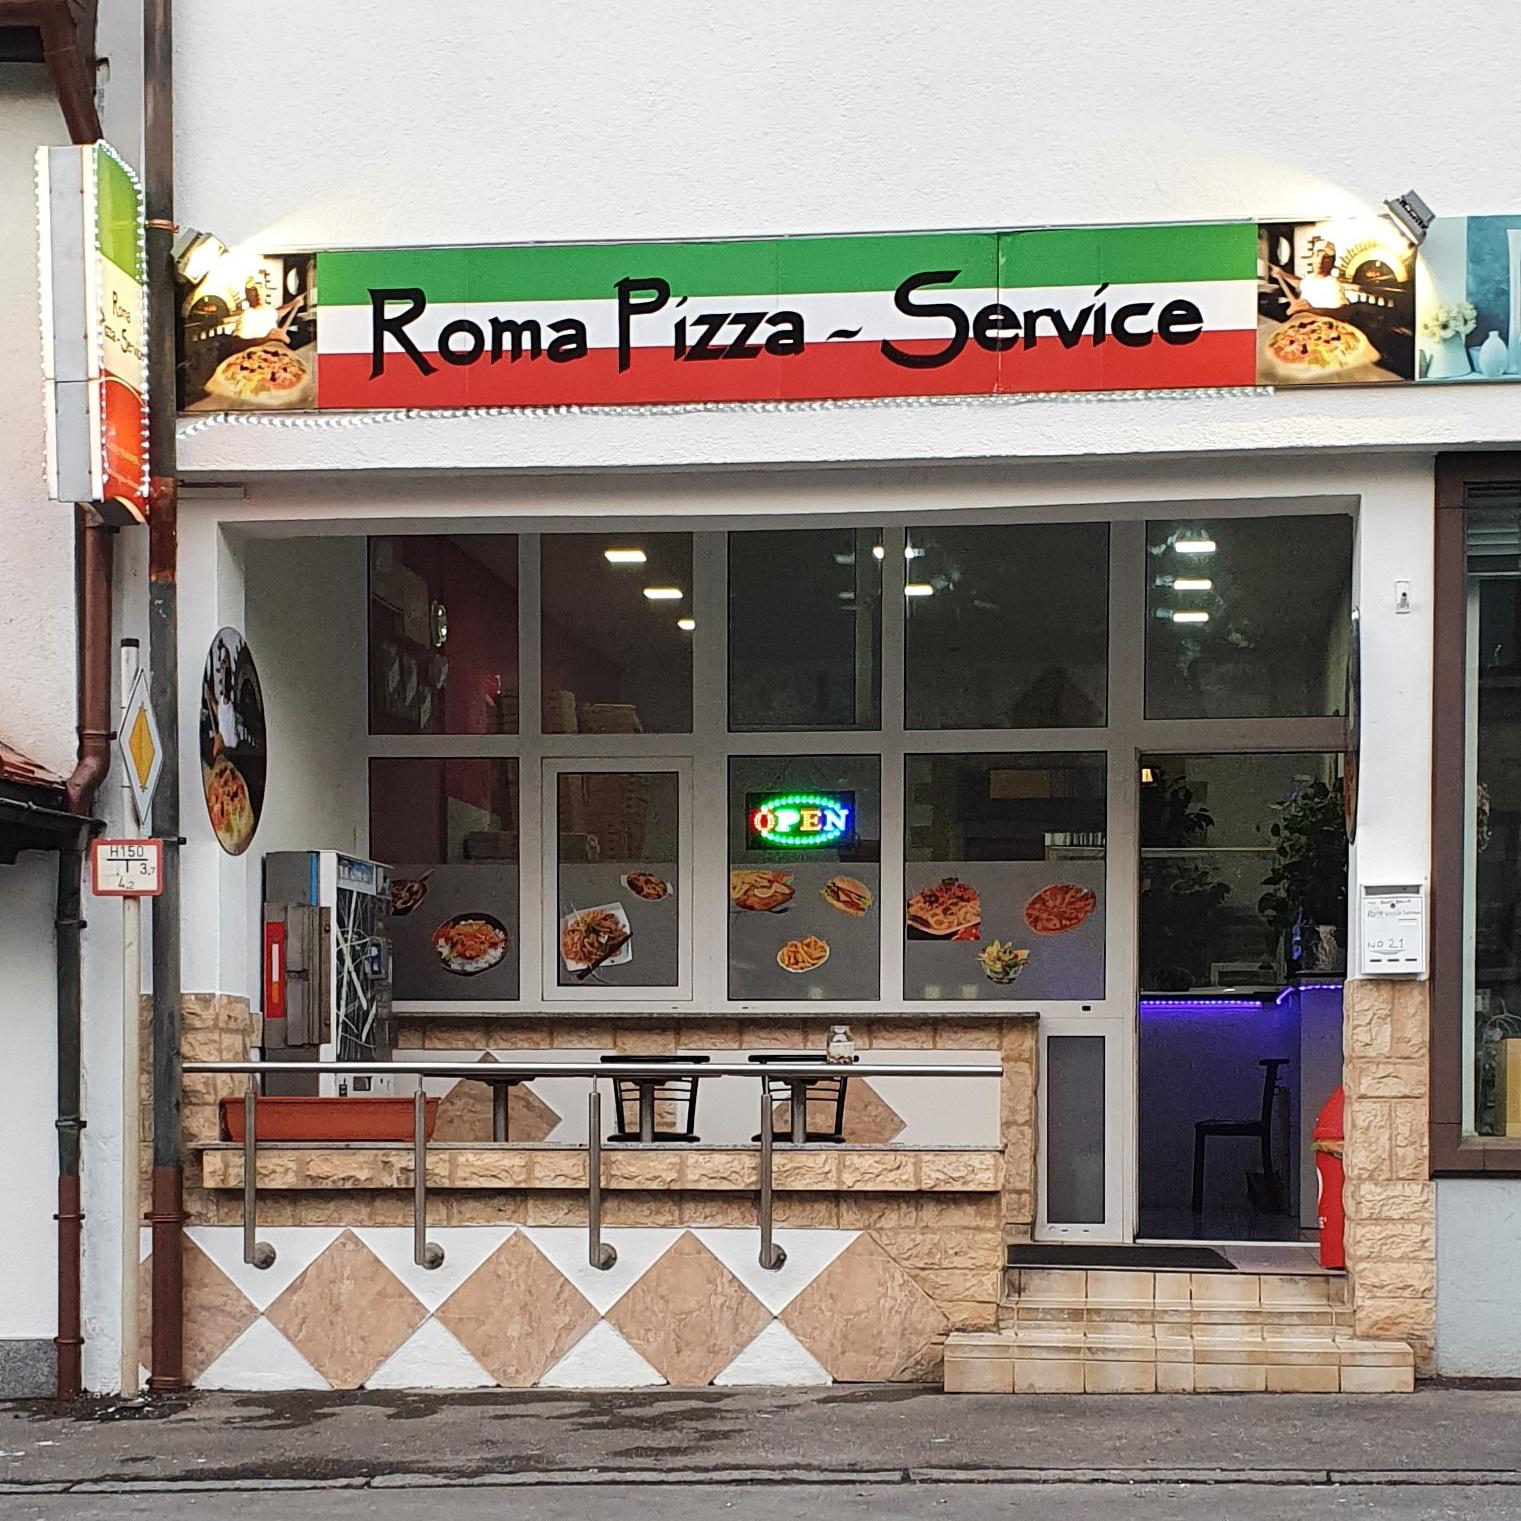 Restaurant "Roma Pizza-Service" in Lichtenstein